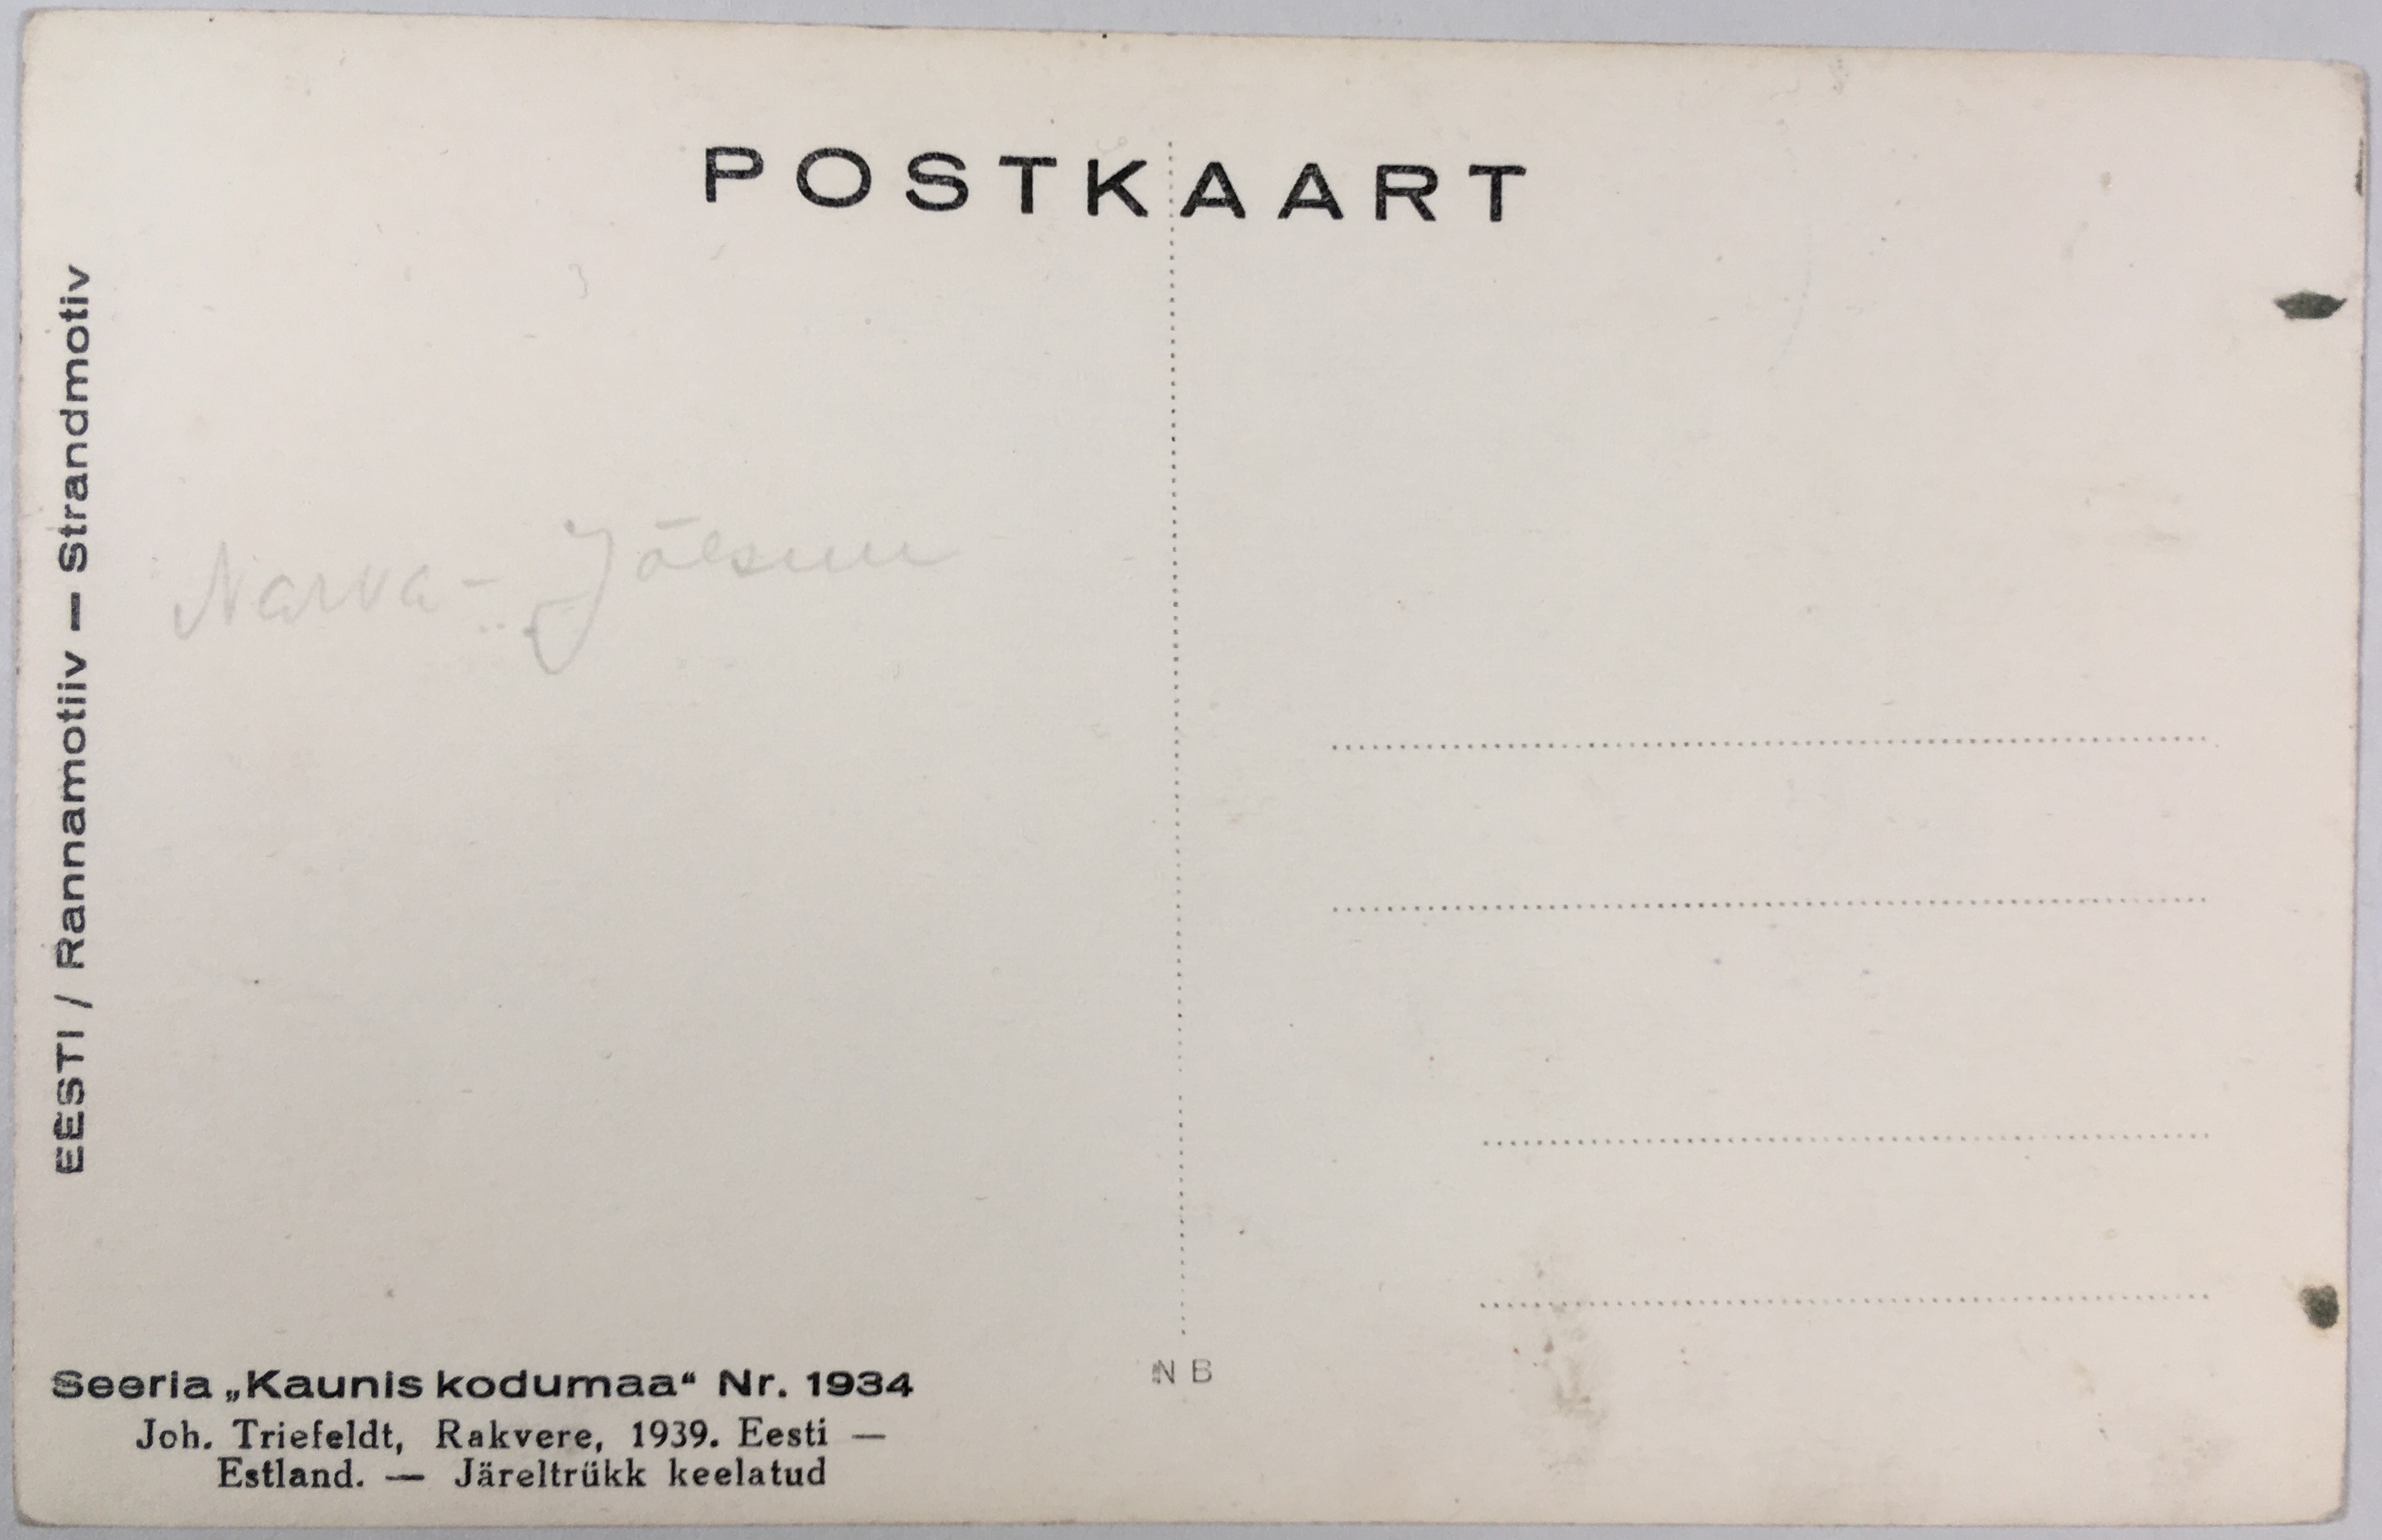 Fotopostkaart sarjast "Kaunis kodumaa" Nr. 1934 tagakülg - Fotopostkaart Rene Viljati erakogust